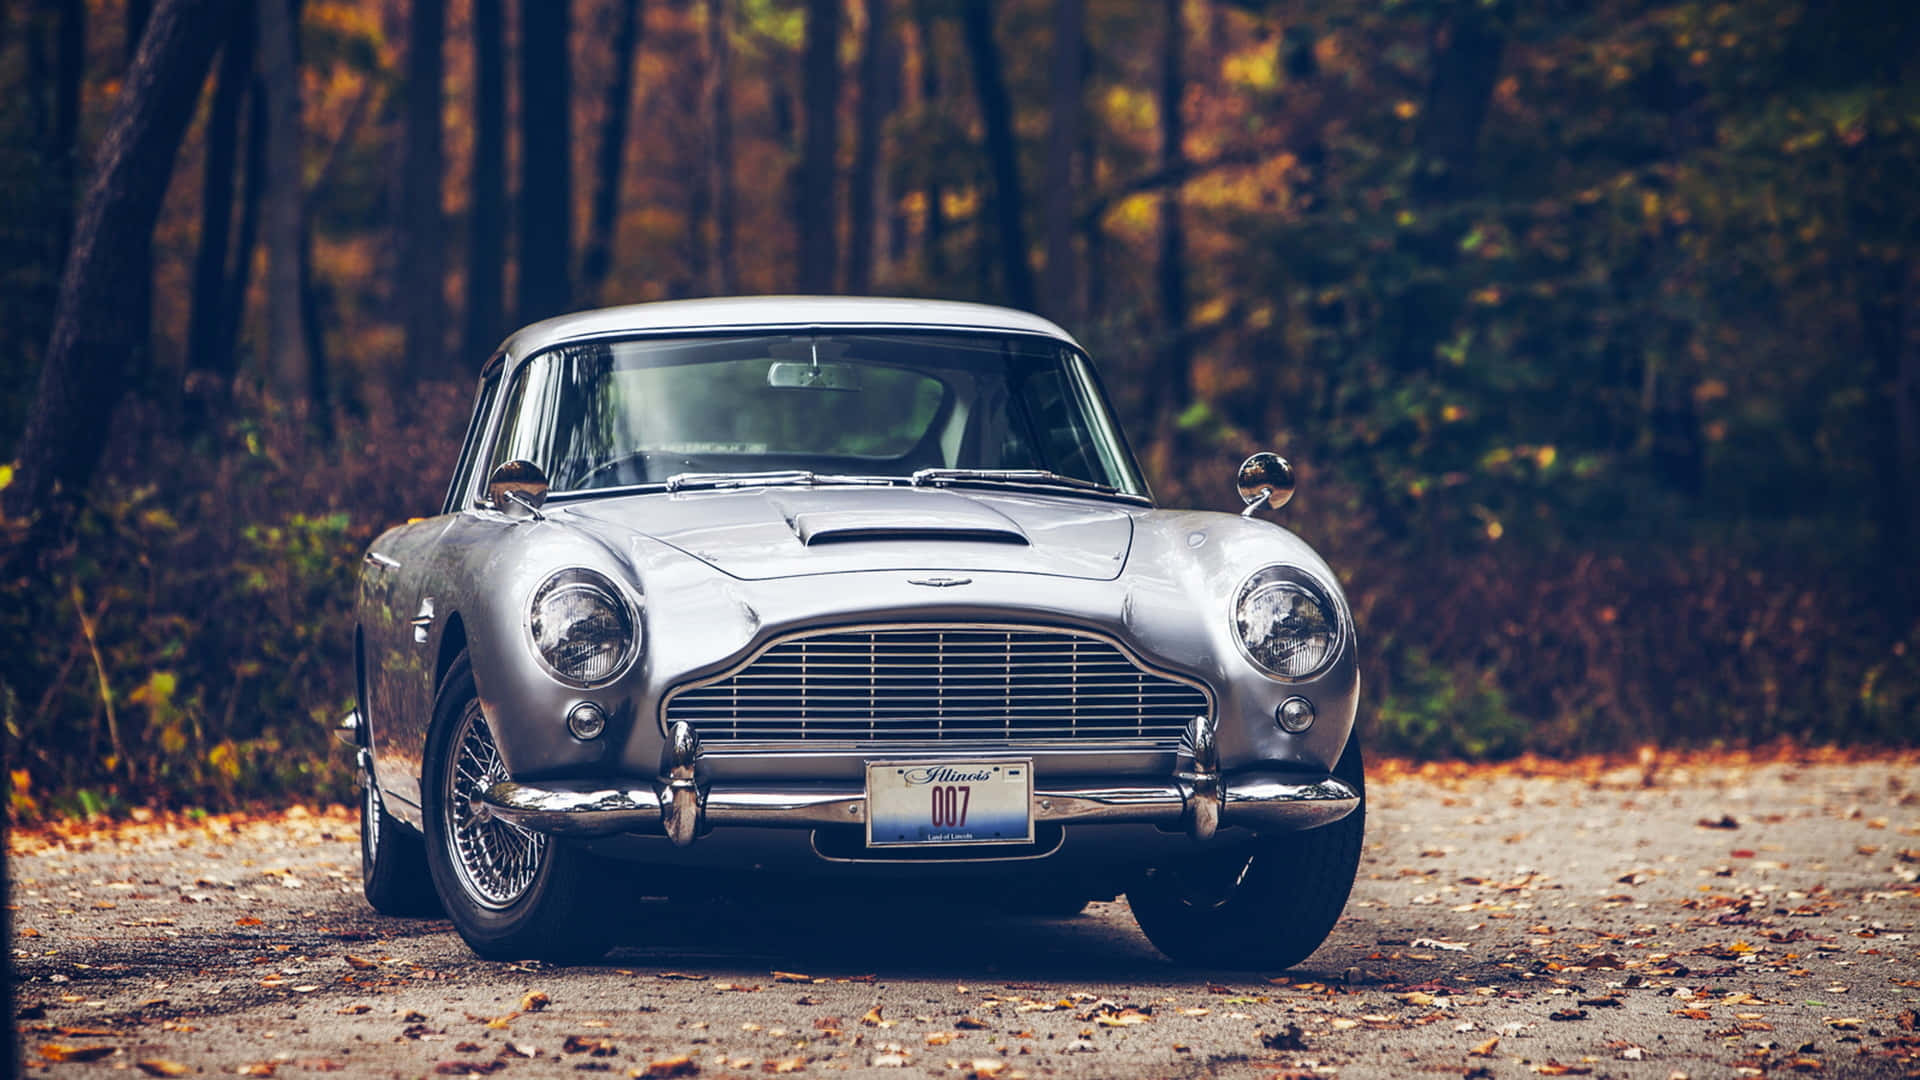 Admirea Elegância De Um Aston Martin